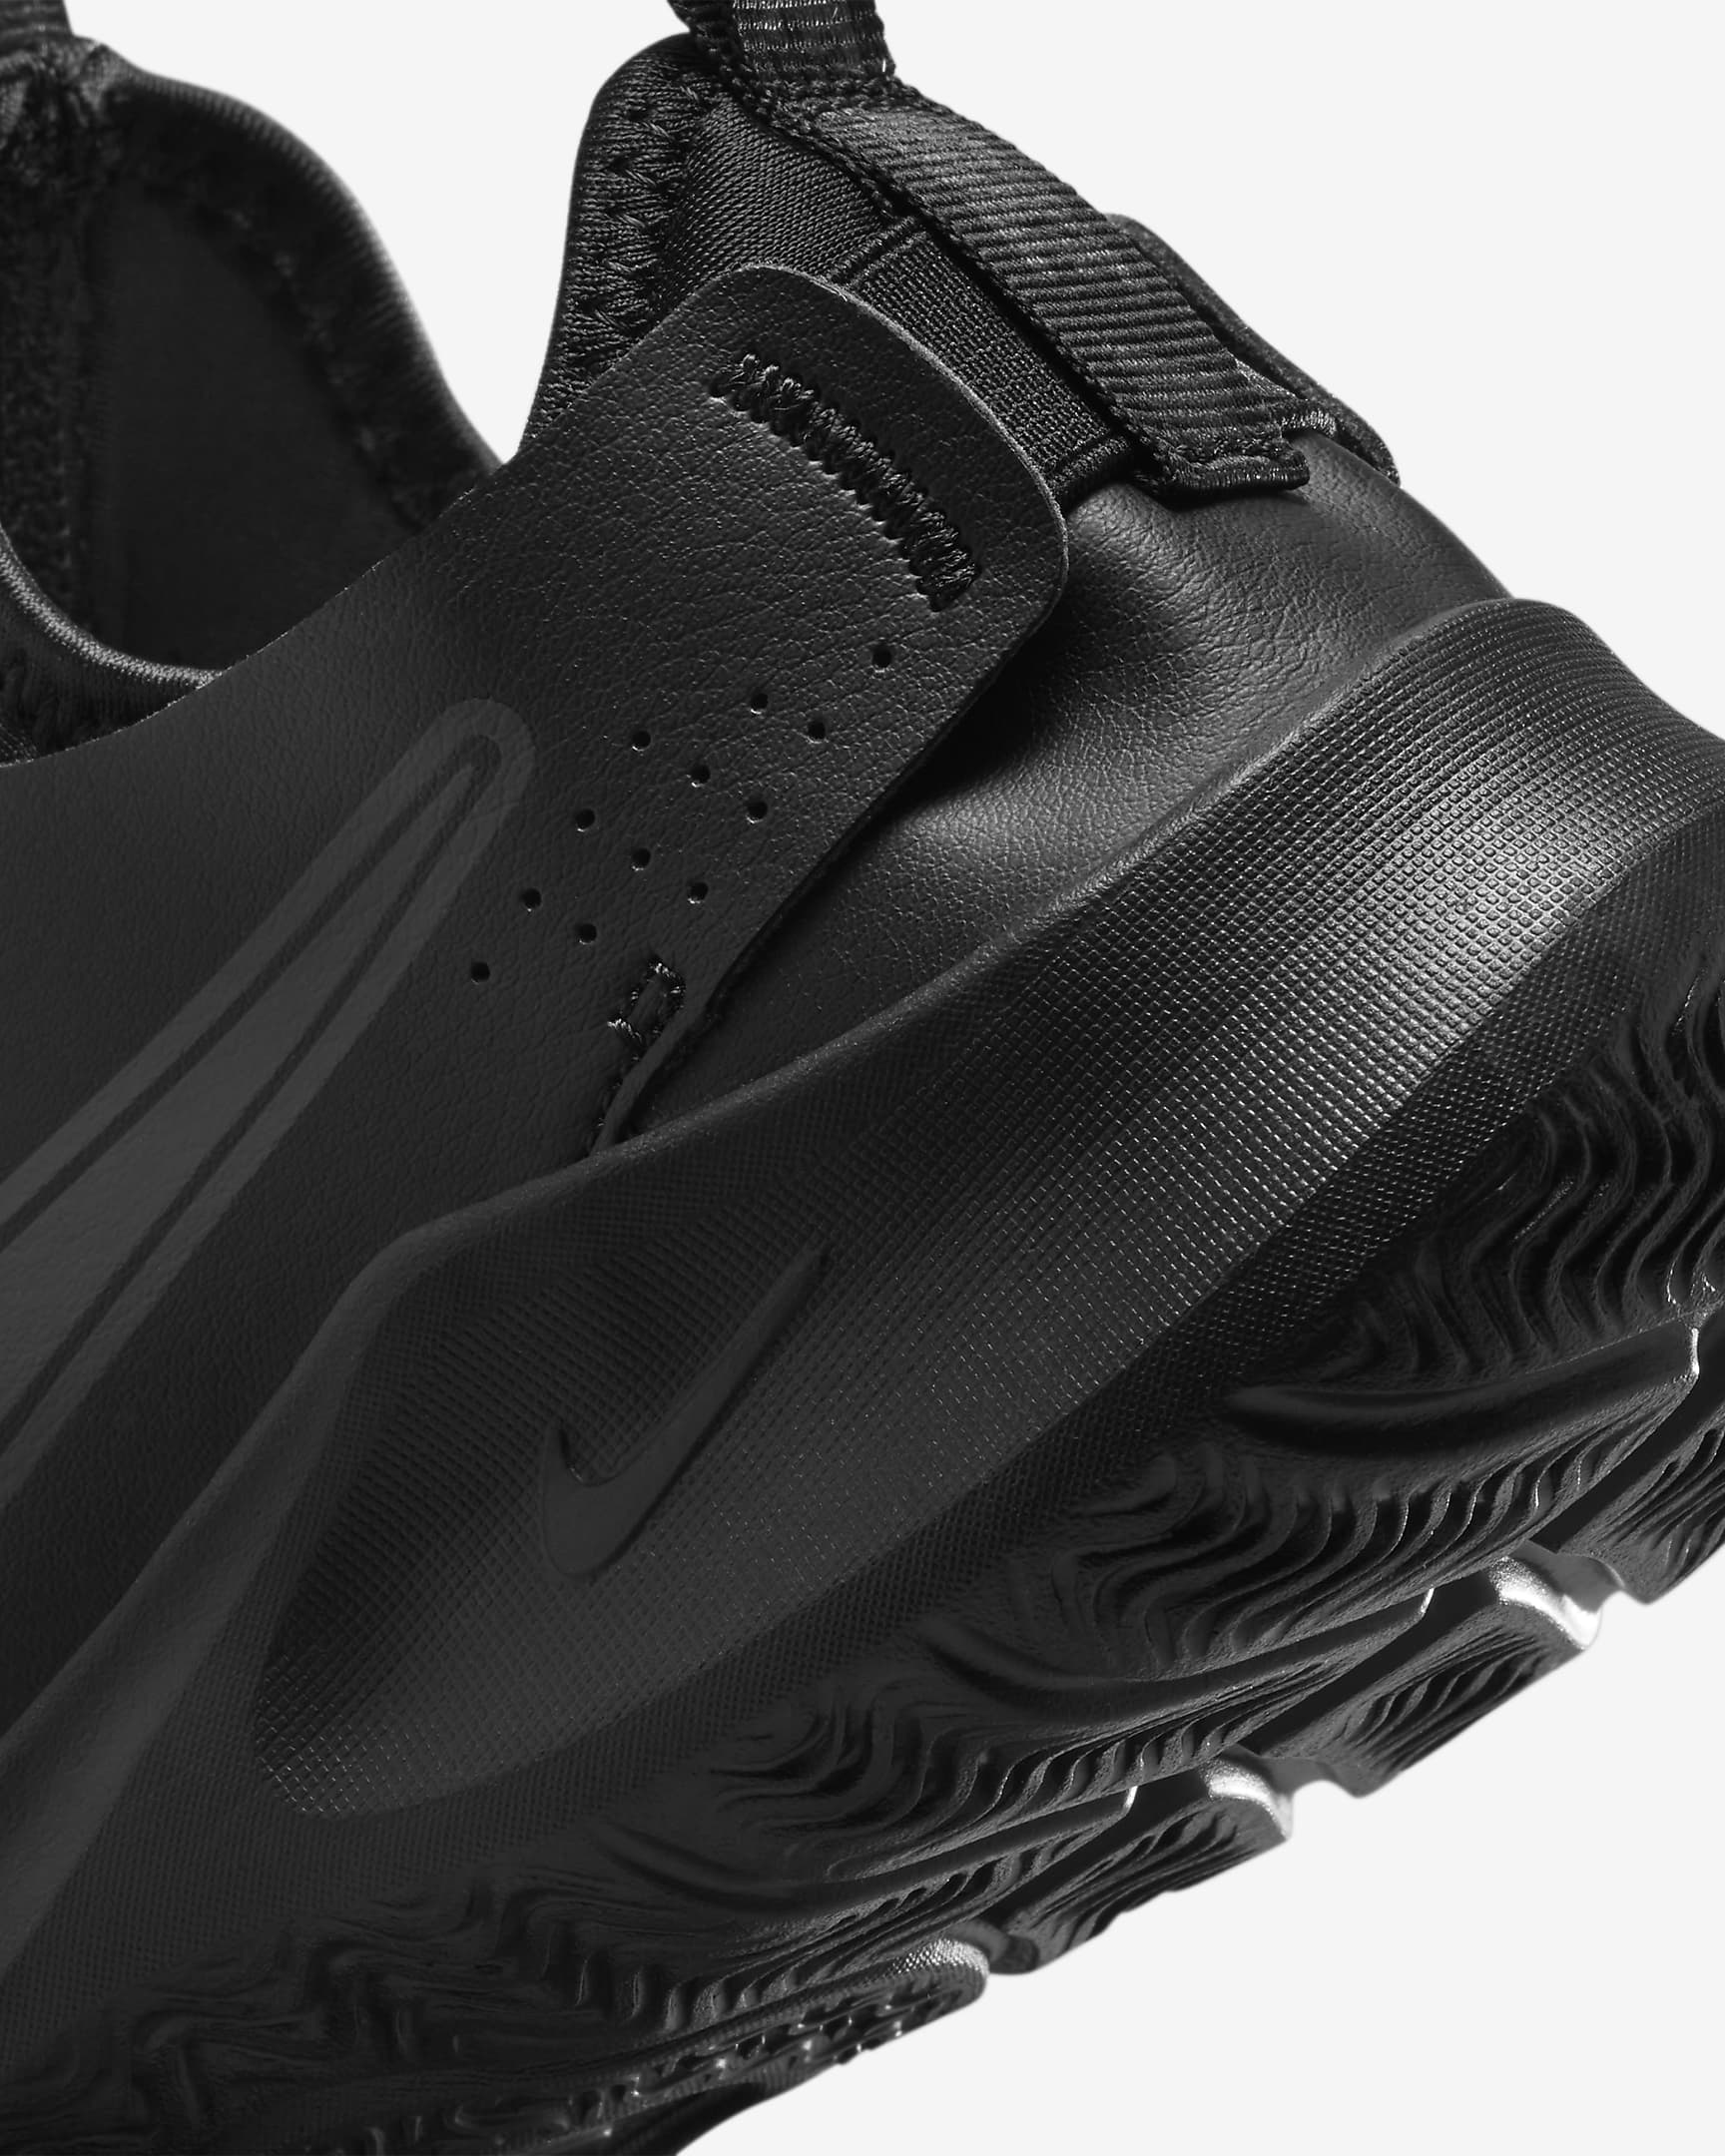 Nike Flex Runner 3 hardloopschoenen voor kids (straat) - Zwart/Zwart/Anthracite